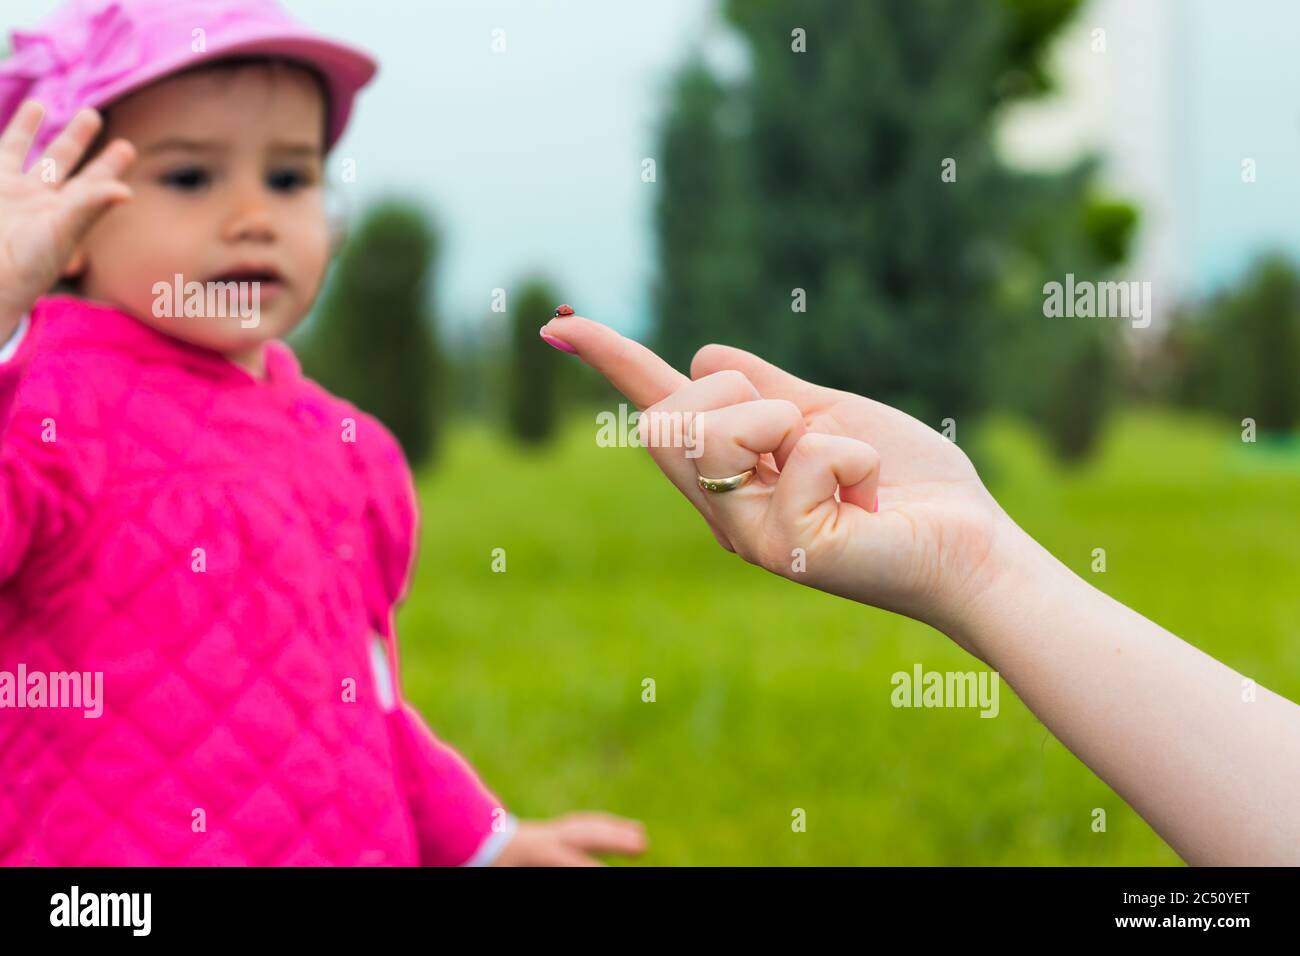 Ein 2-jähriges Mädchen, das auf einen Marienkäfer am Finger ihrer Mutter schaut Stockfoto